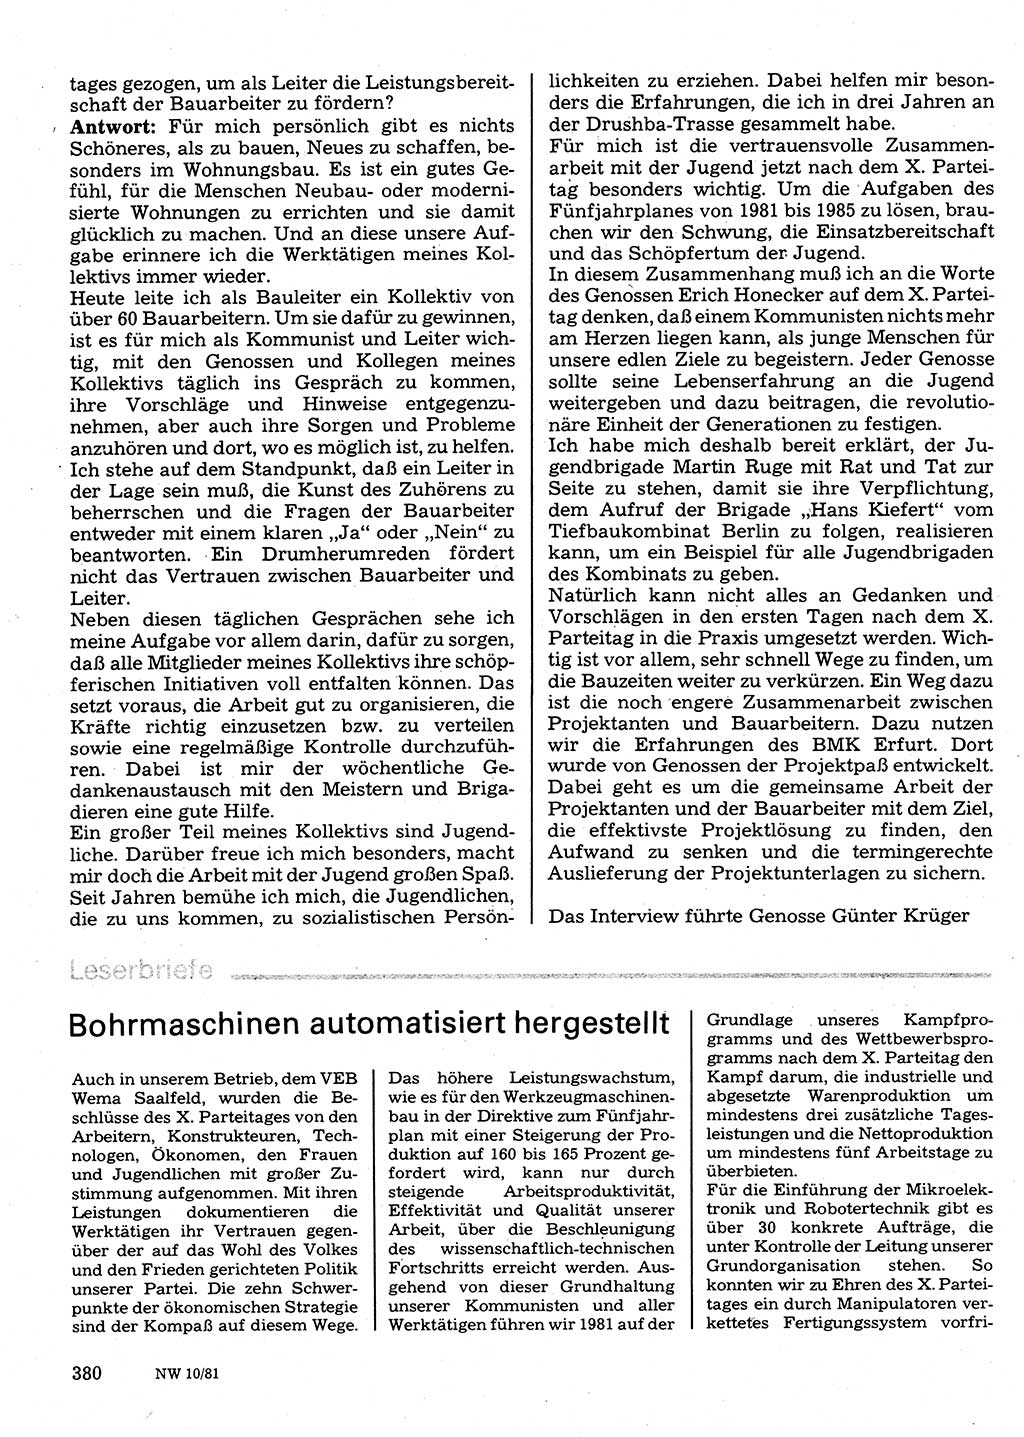 Neuer Weg (NW), Organ des Zentralkomitees (ZK) der SED (Sozialistische Einheitspartei Deutschlands) für Fragen des Parteilebens, 36. Jahrgang [Deutsche Demokratische Republik (DDR)] 1981, Seite 380 (NW ZK SED DDR 1981, S. 380)